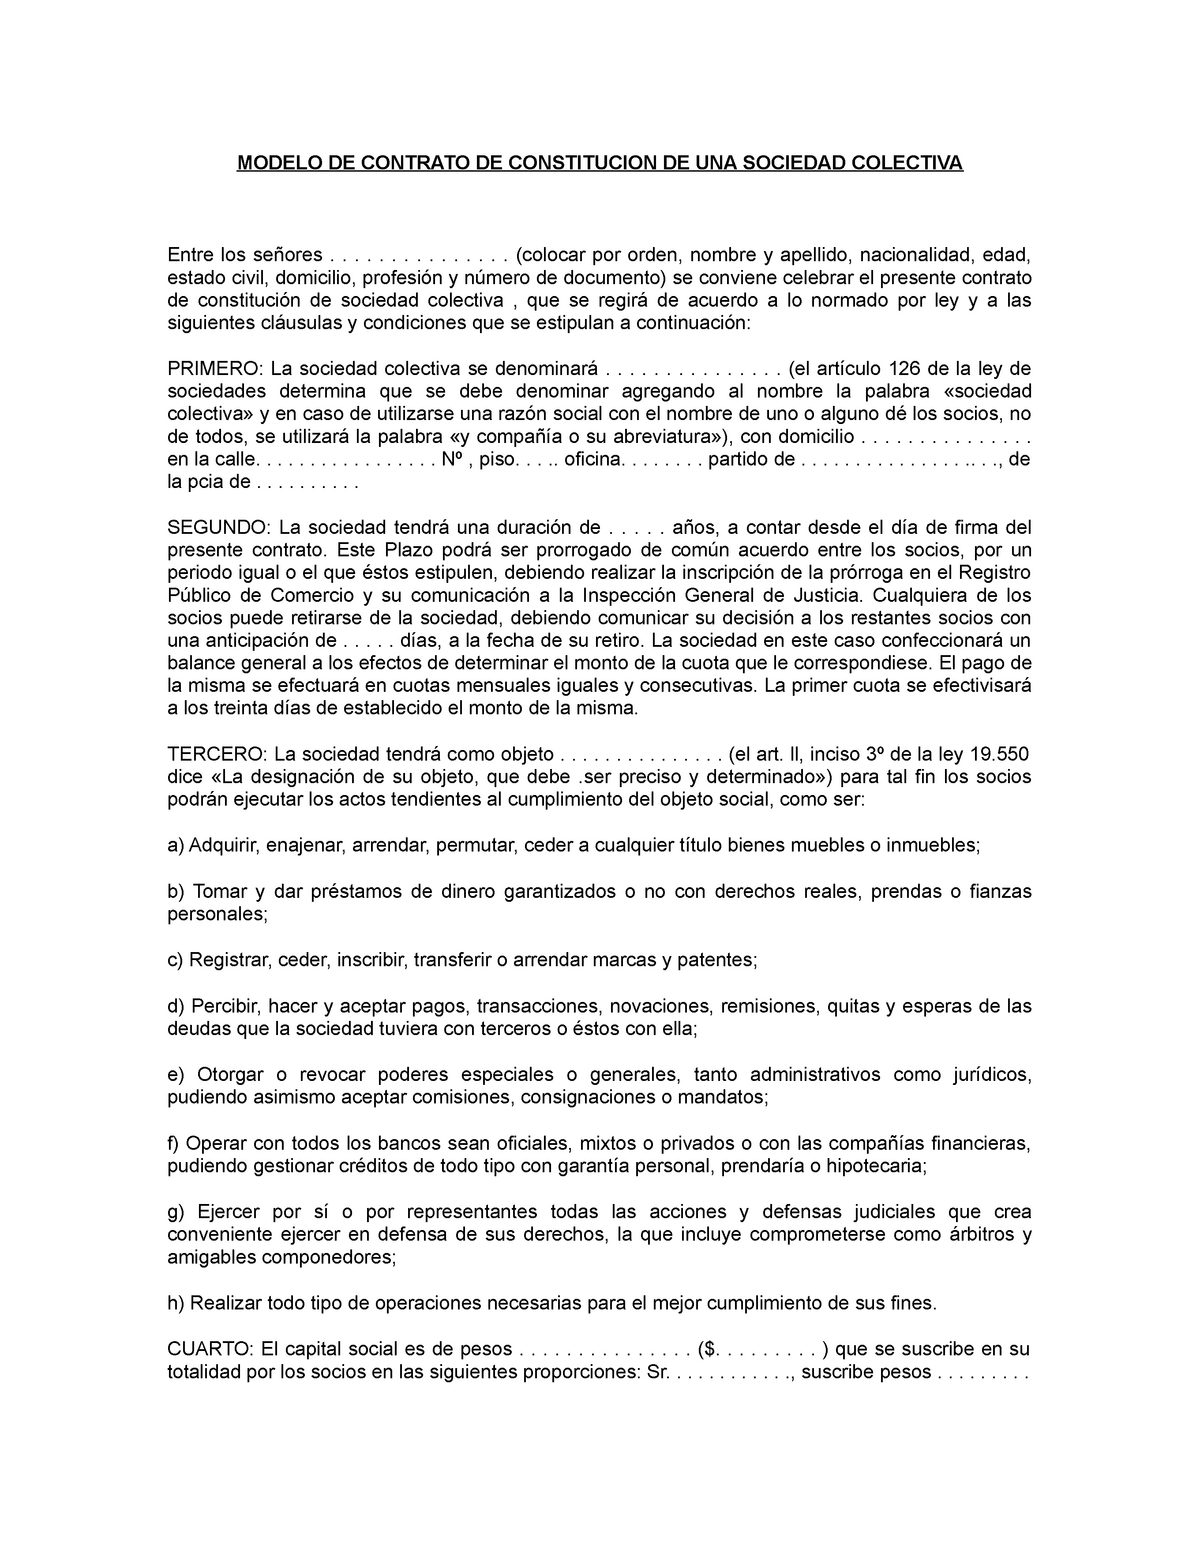 Contrato constitutivo de una sociedad colectiva - MODELO DE CONTRATO DE  CONSTITUCION DE UNA SOCIEDAD - Studocu